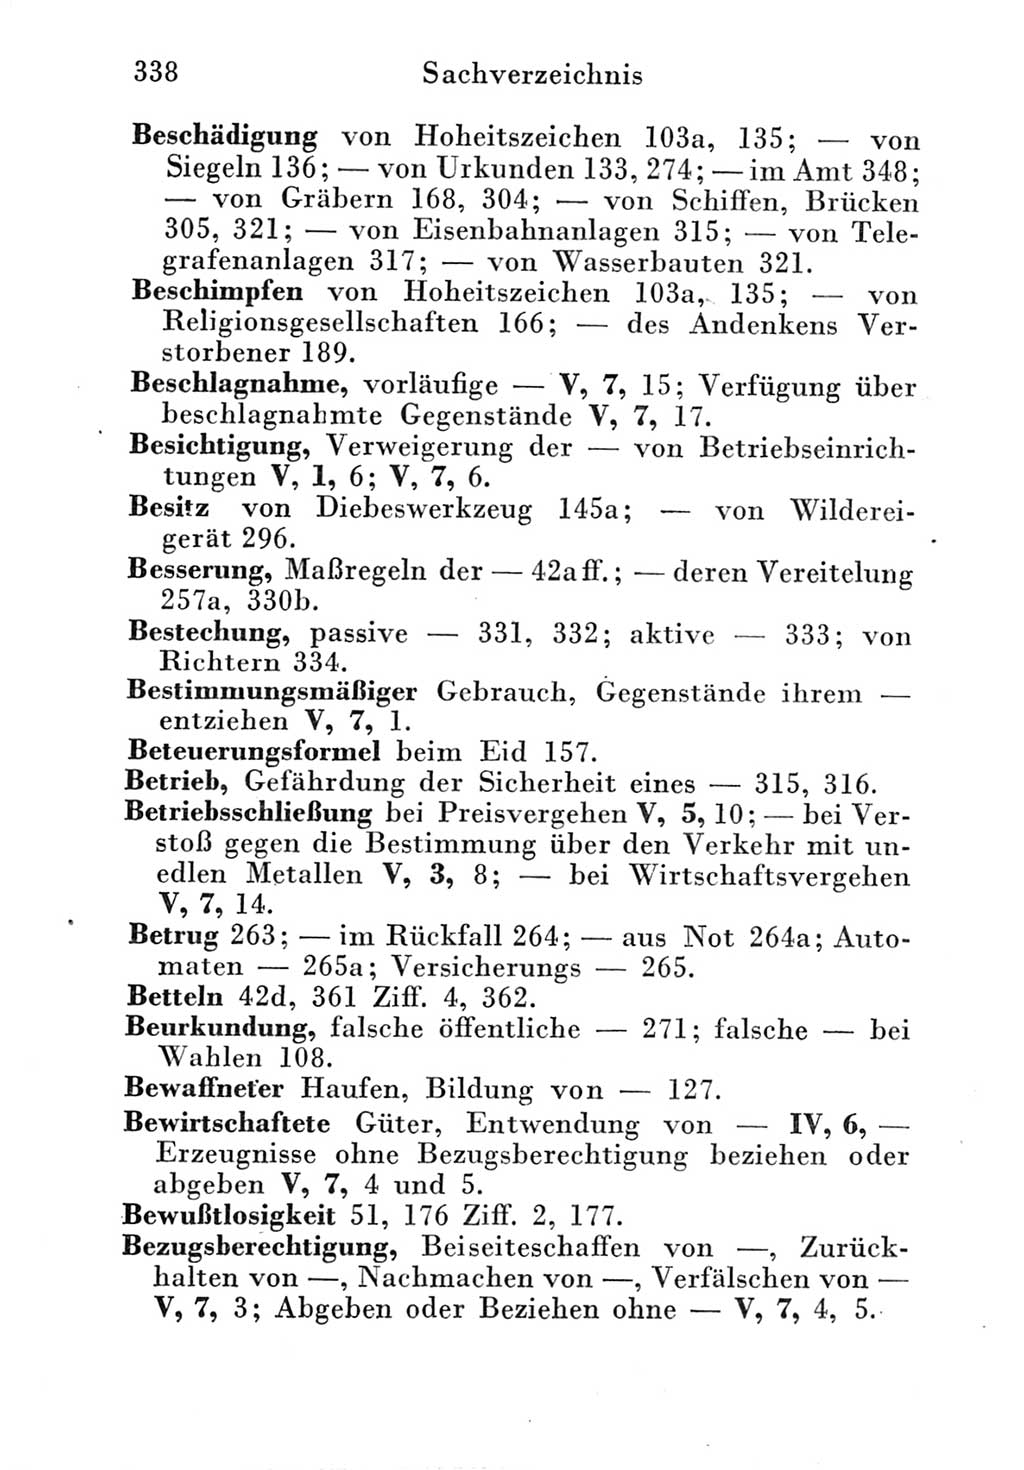 Strafgesetzbuch (StGB) und andere Strafgesetze [Deutsche Demokratische Republik (DDR)] 1951, Seite 338 (StGB Strafges. DDR 1951, S. 338)